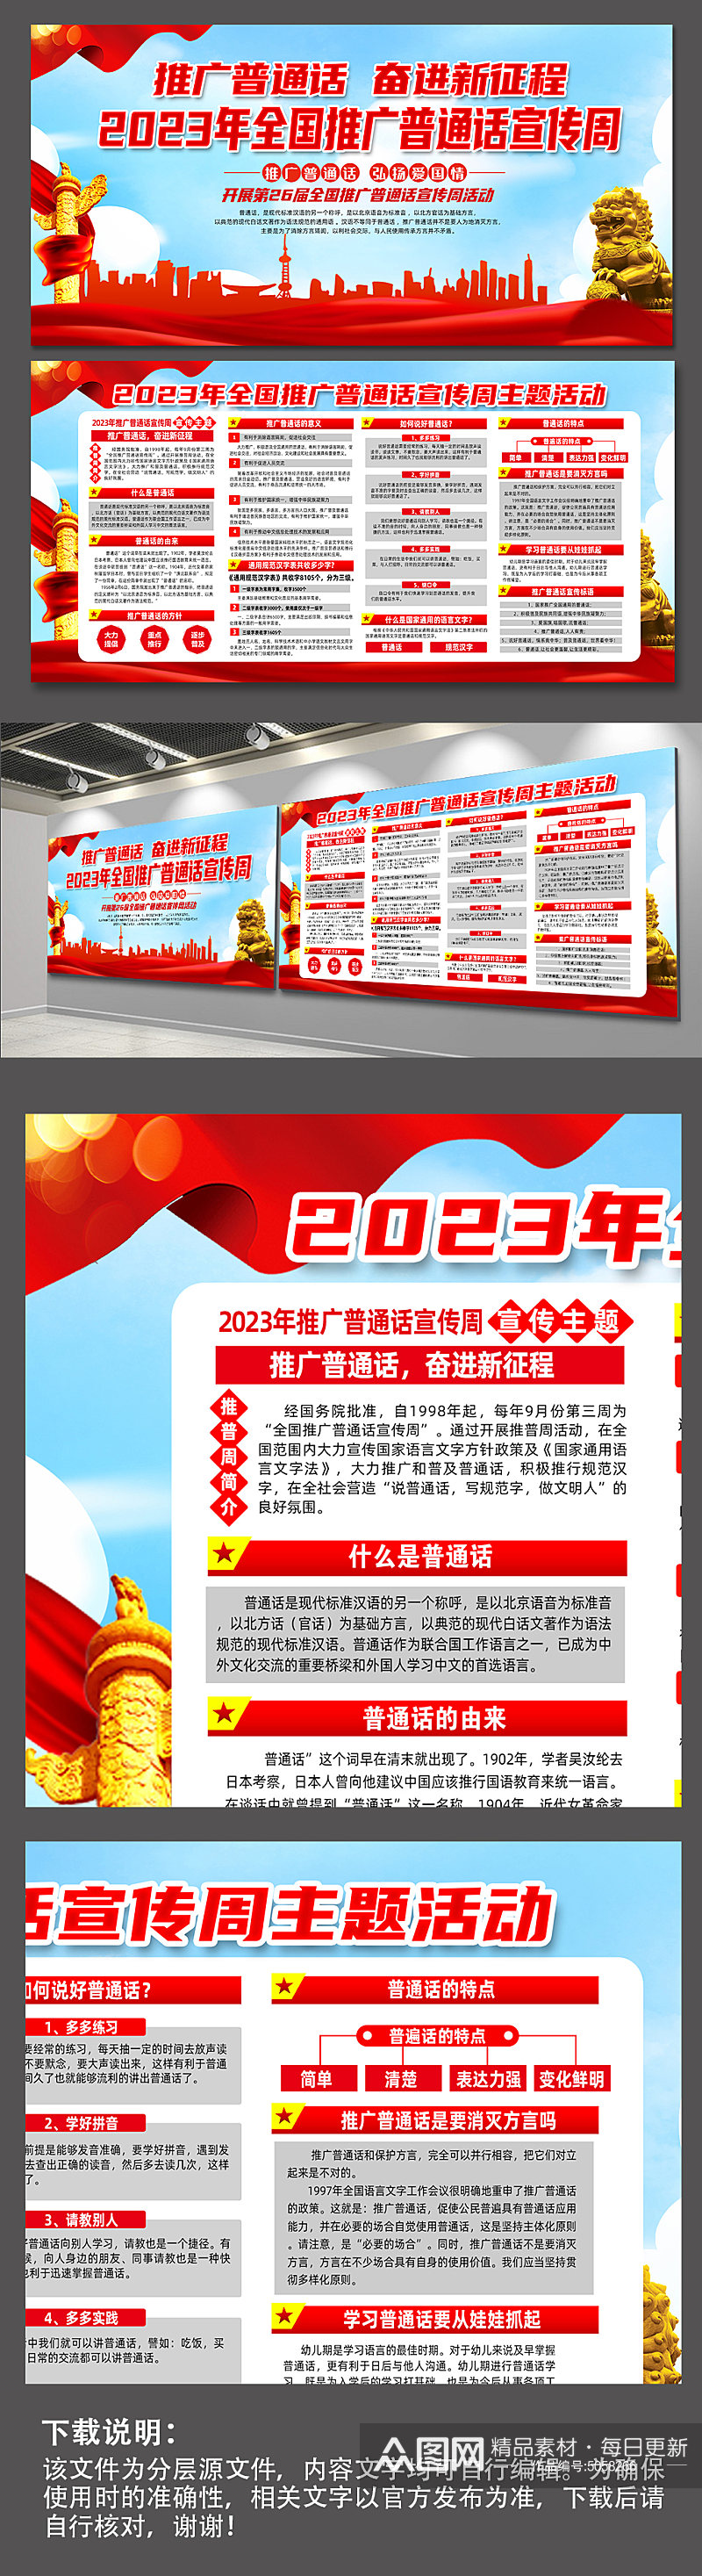 2023年全国推广普通话宣传周活动展板素材